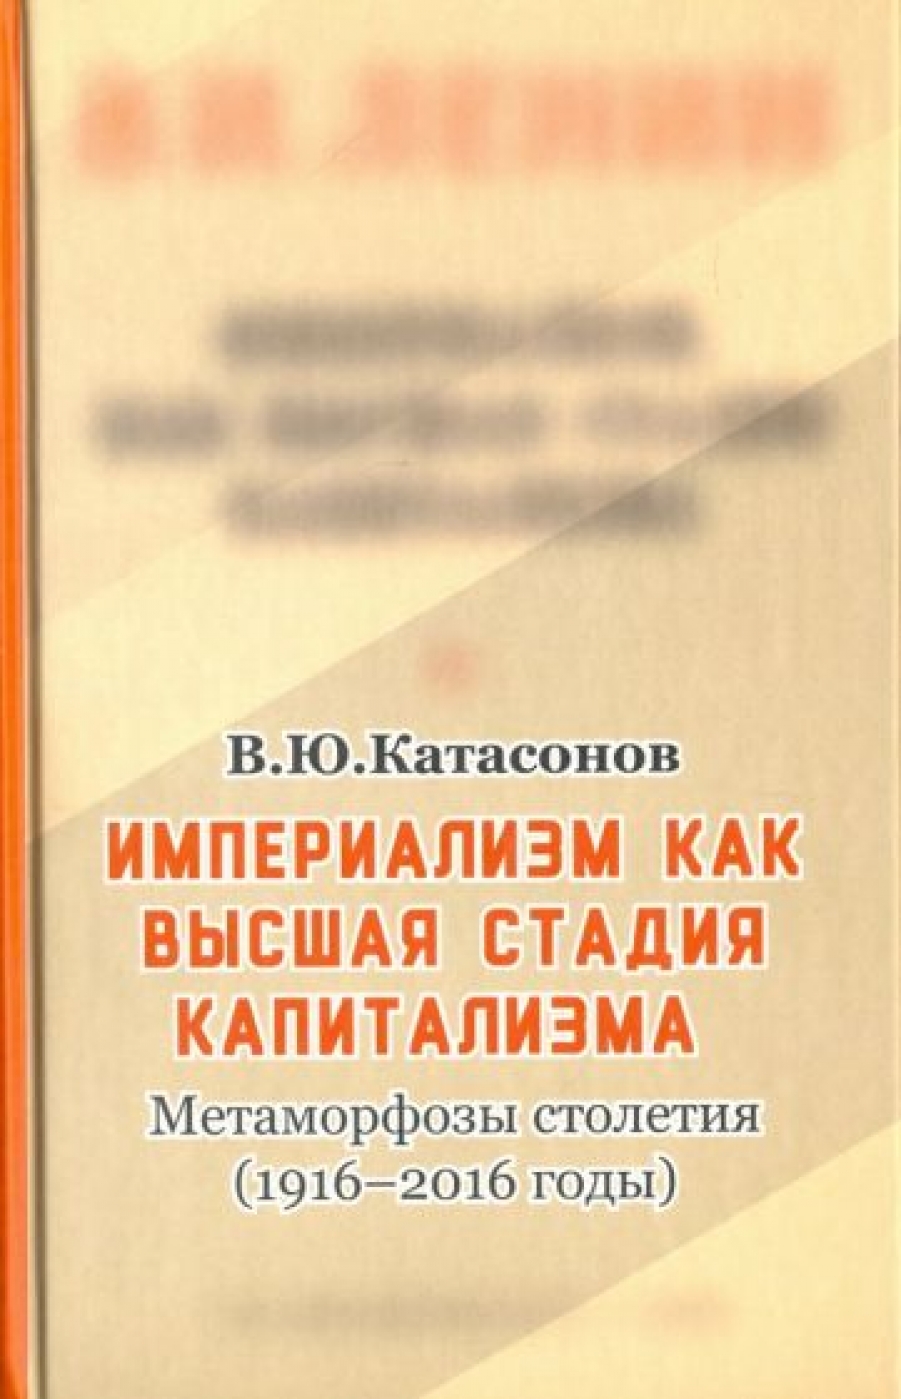 Катасонов В.Ю. Империализм, как высшая стадия капитализма 